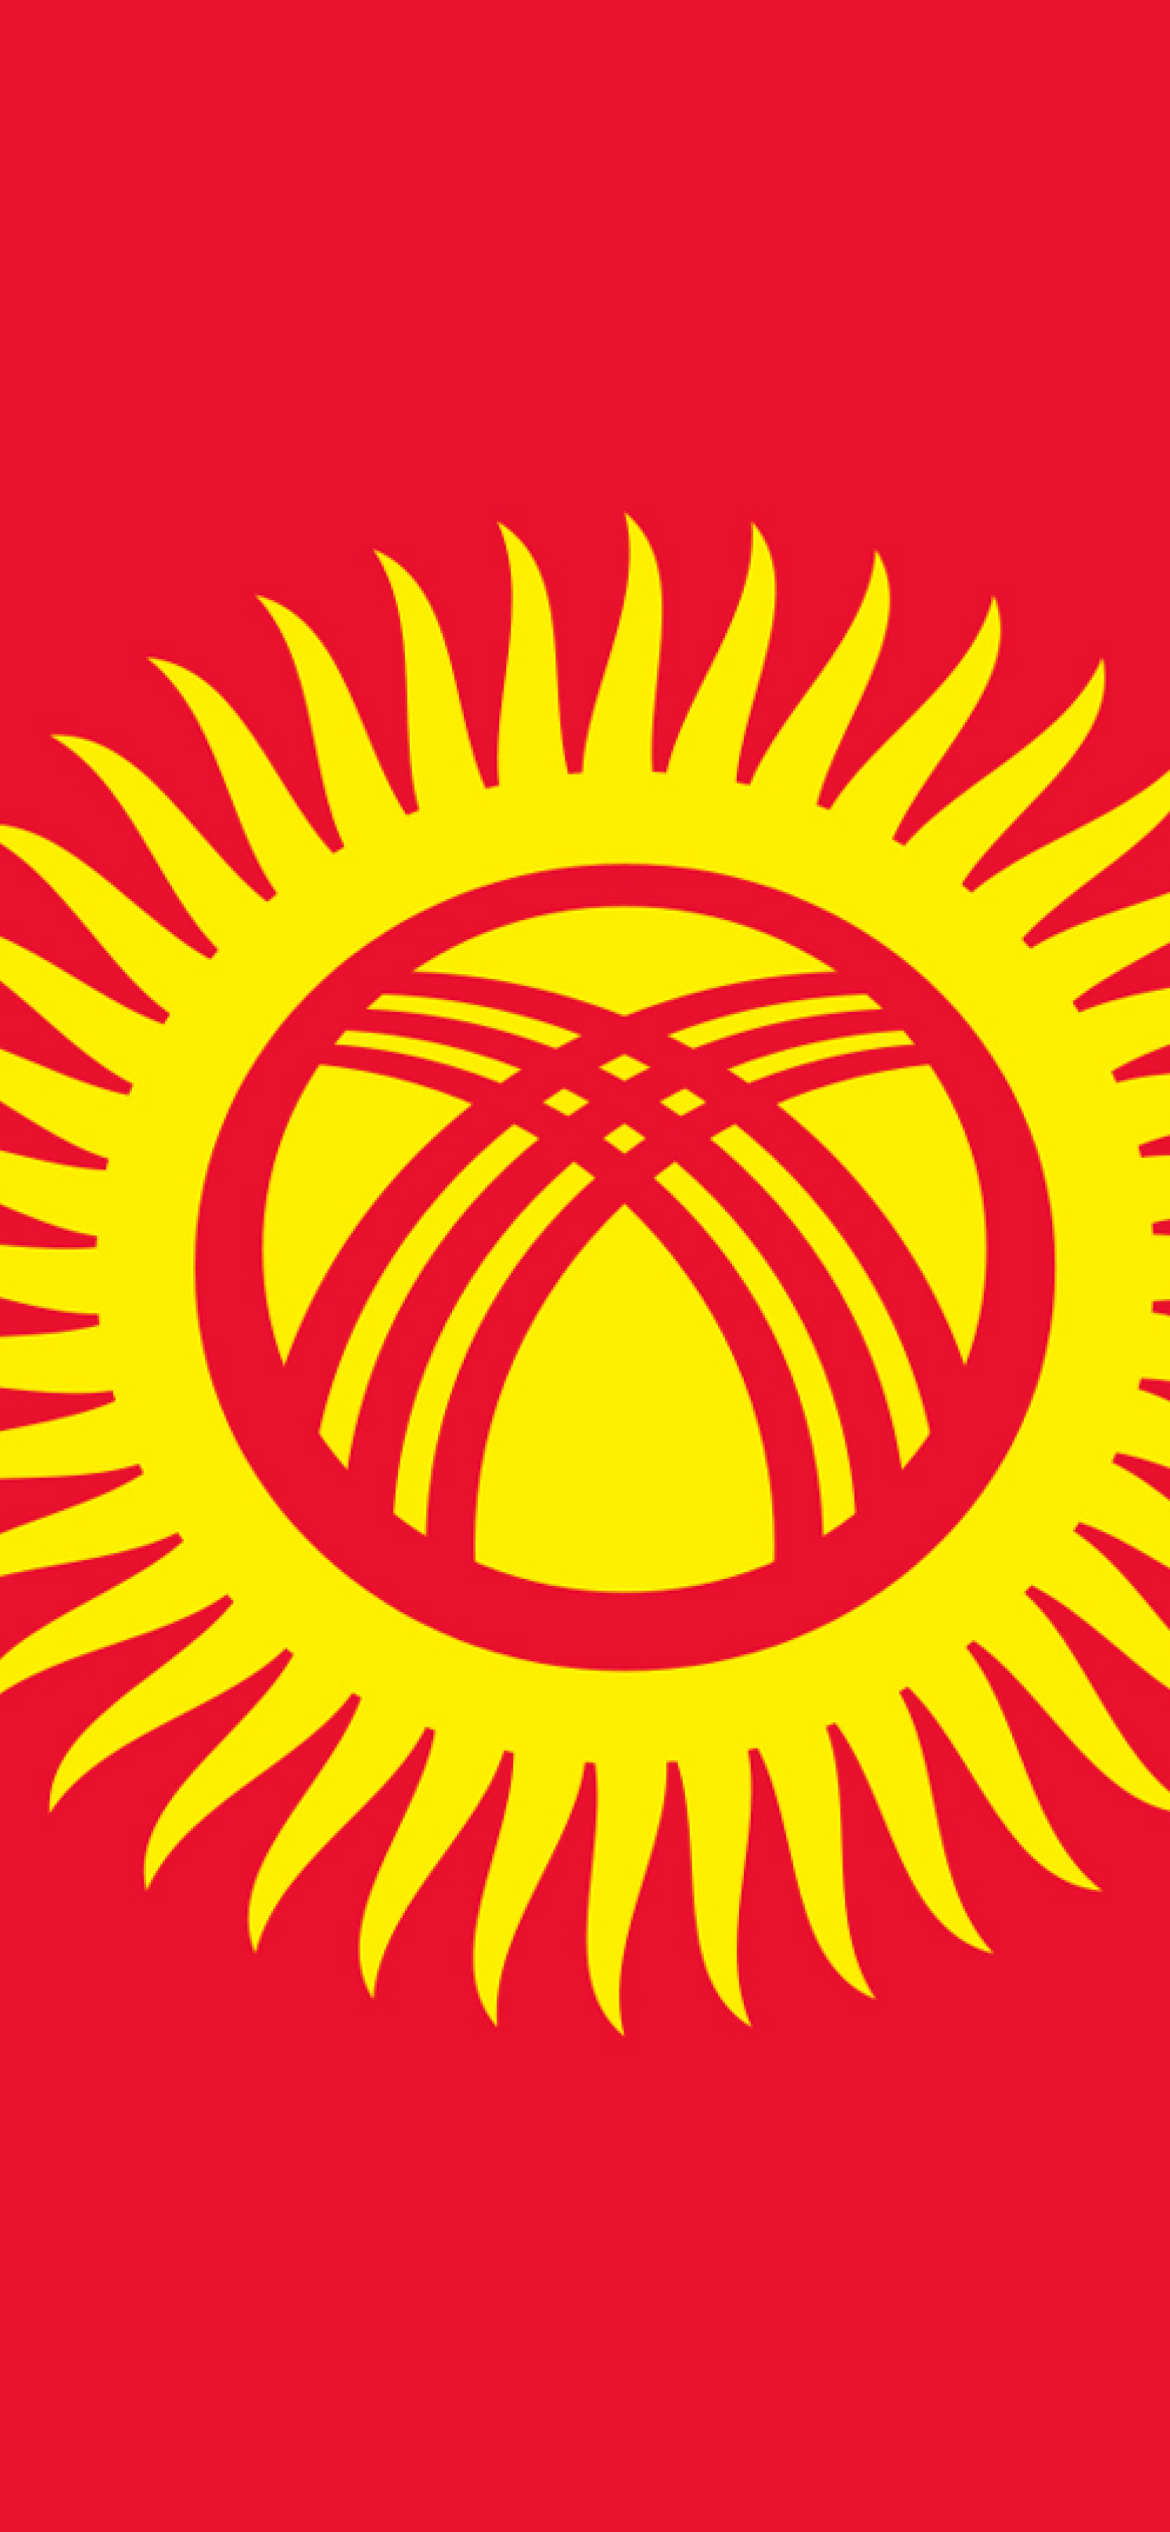 Flag of Kyrgyzstan wallpaper 1170x2532